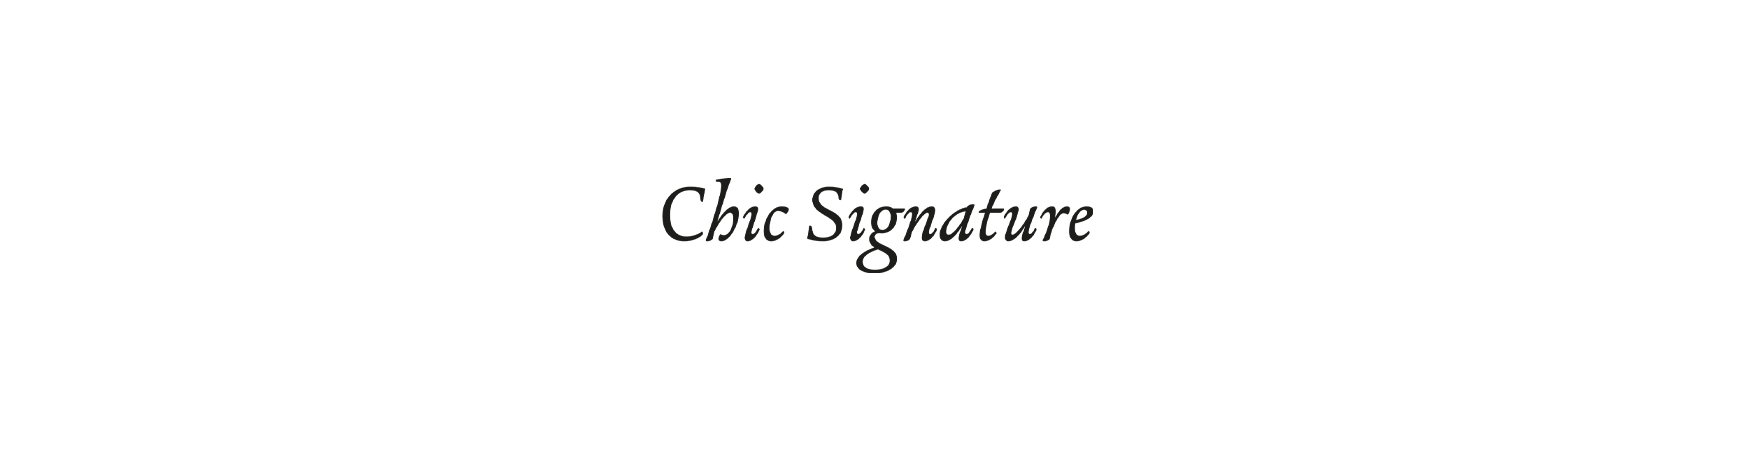 Chic Signature